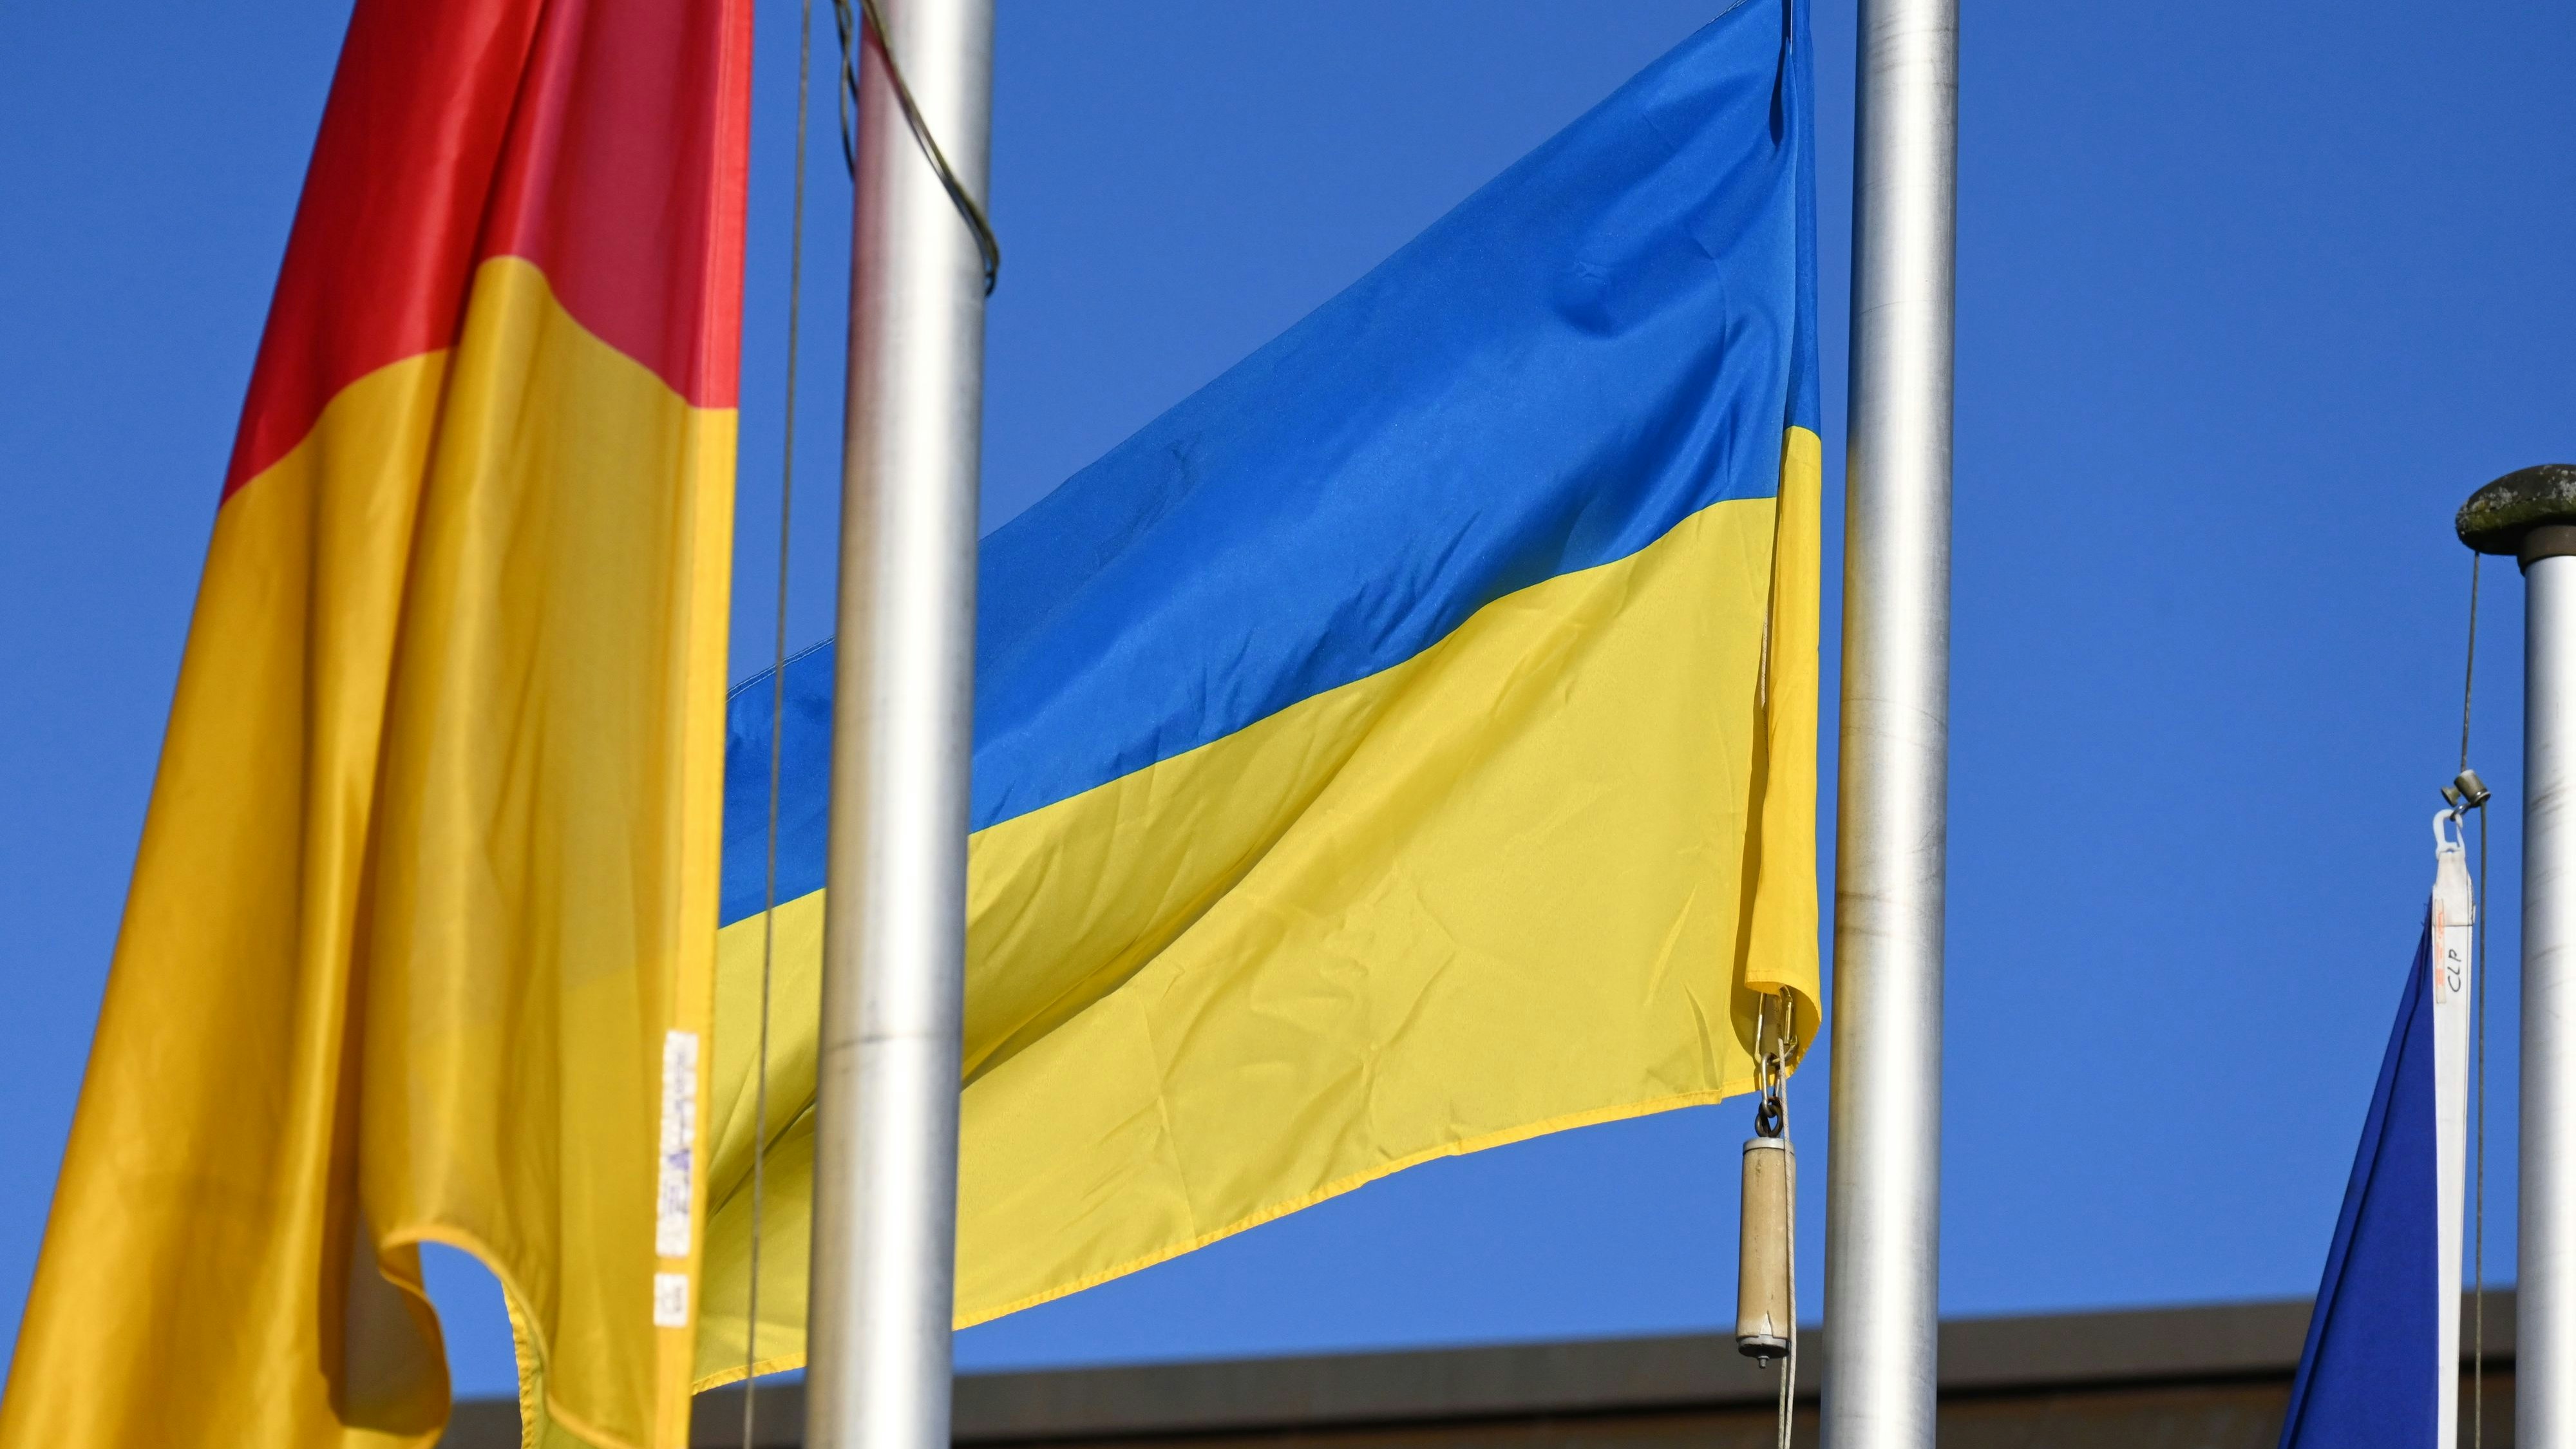 Geflaggt: An vielen öffentlichen Gebäuden ist momentan die Flagge der Ukraine gehisst. Foto: Thomas Vorwerk